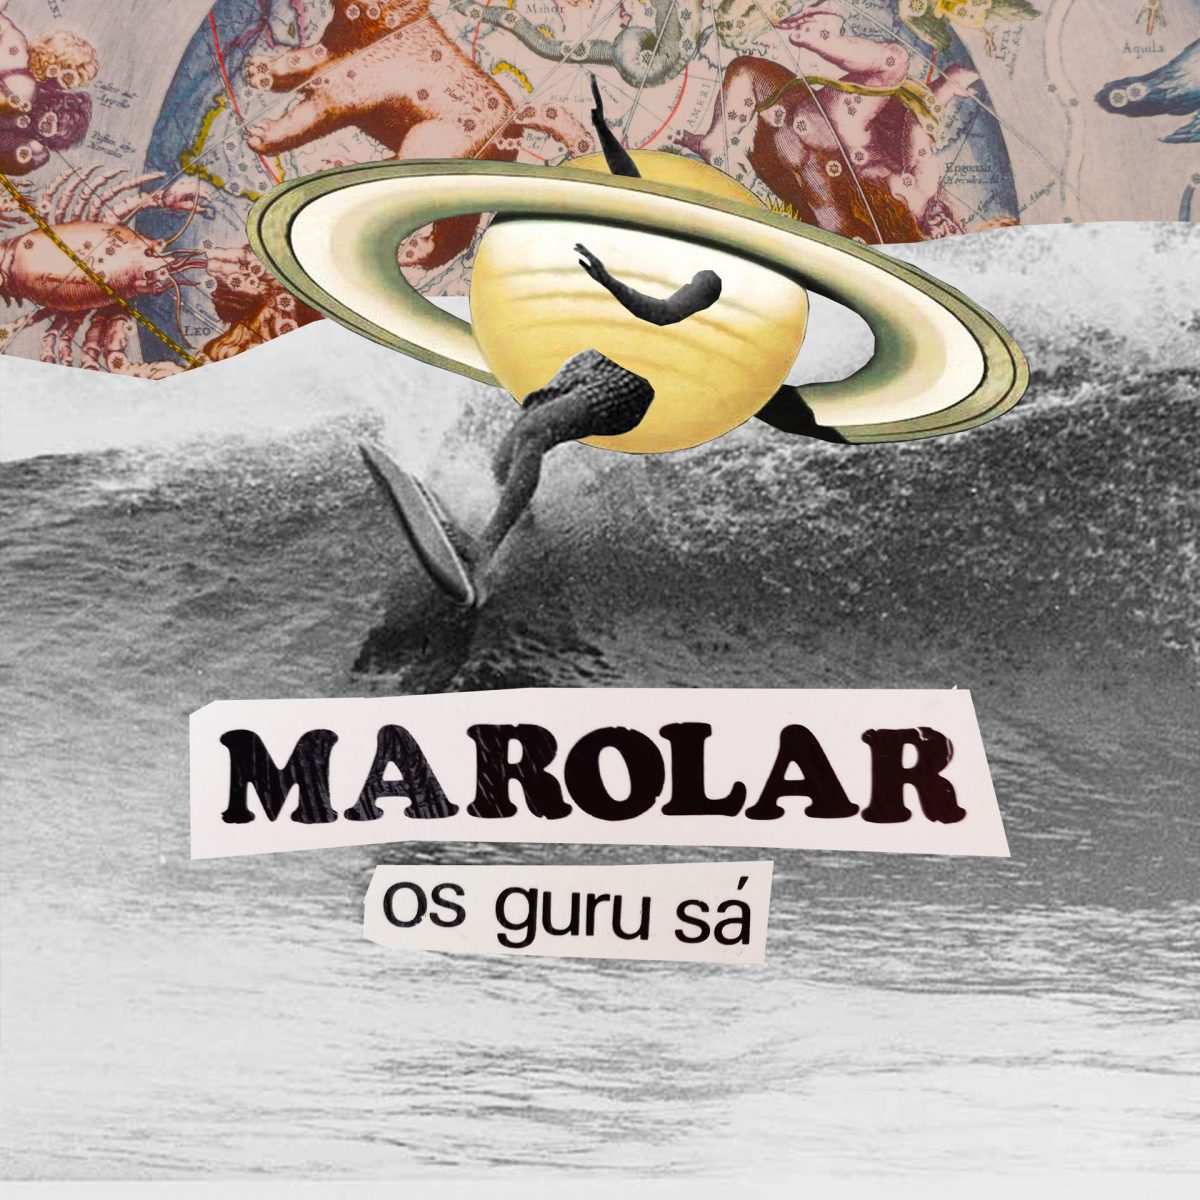 Marolar, single da banda O Guru Sá